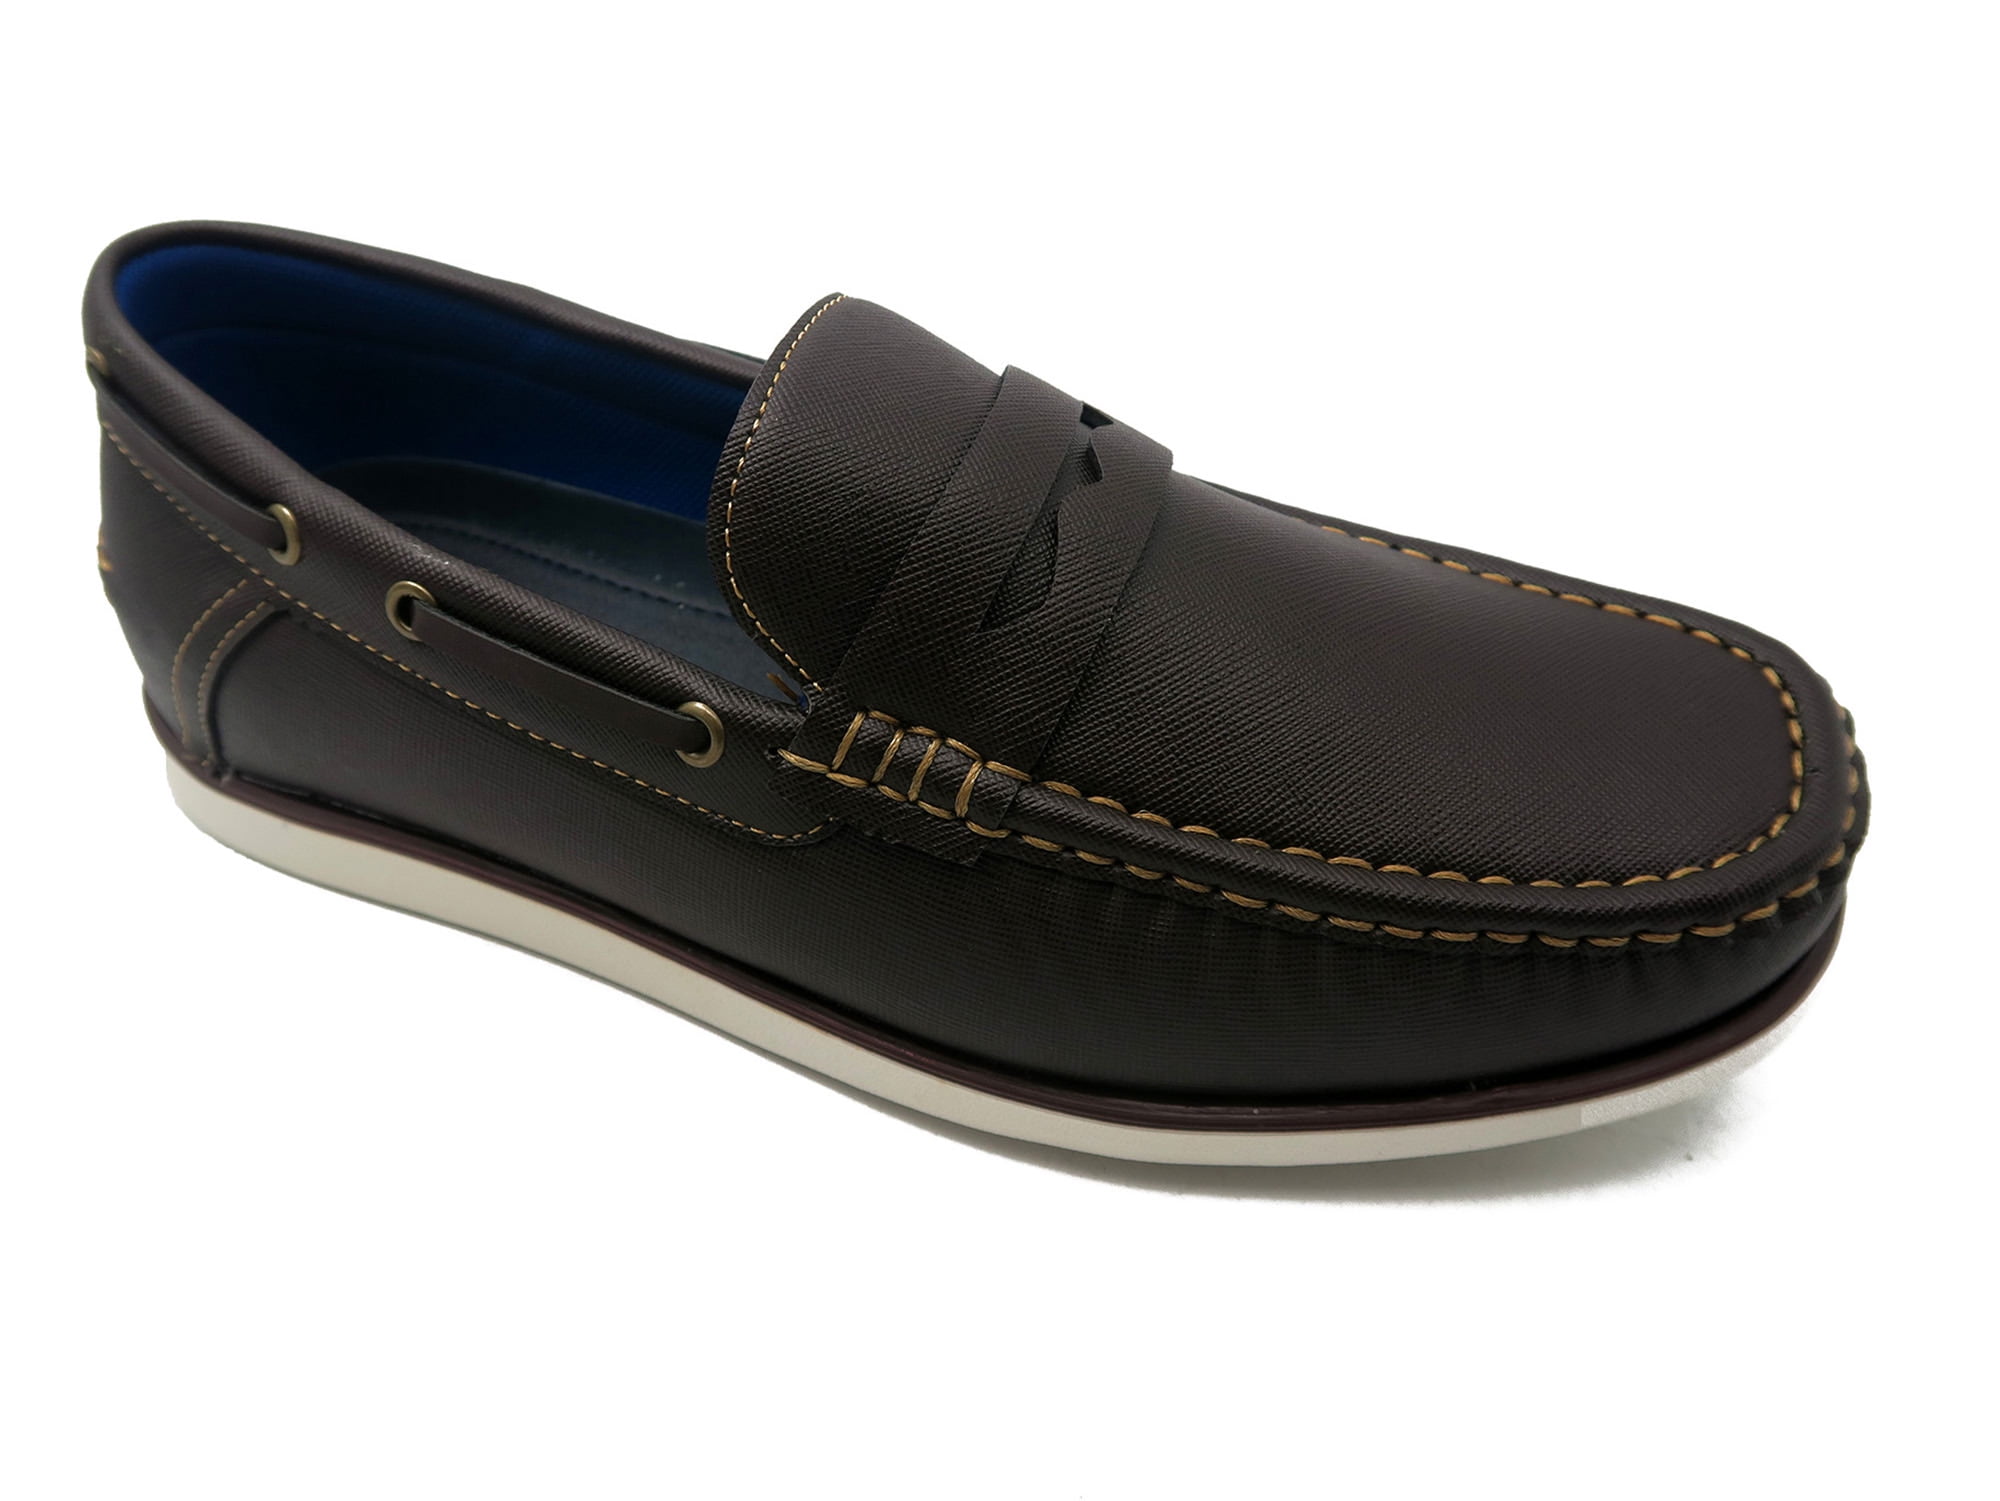 Mecca Men's Leo Penny Loafer Slip-on Shoes - Walmart.com